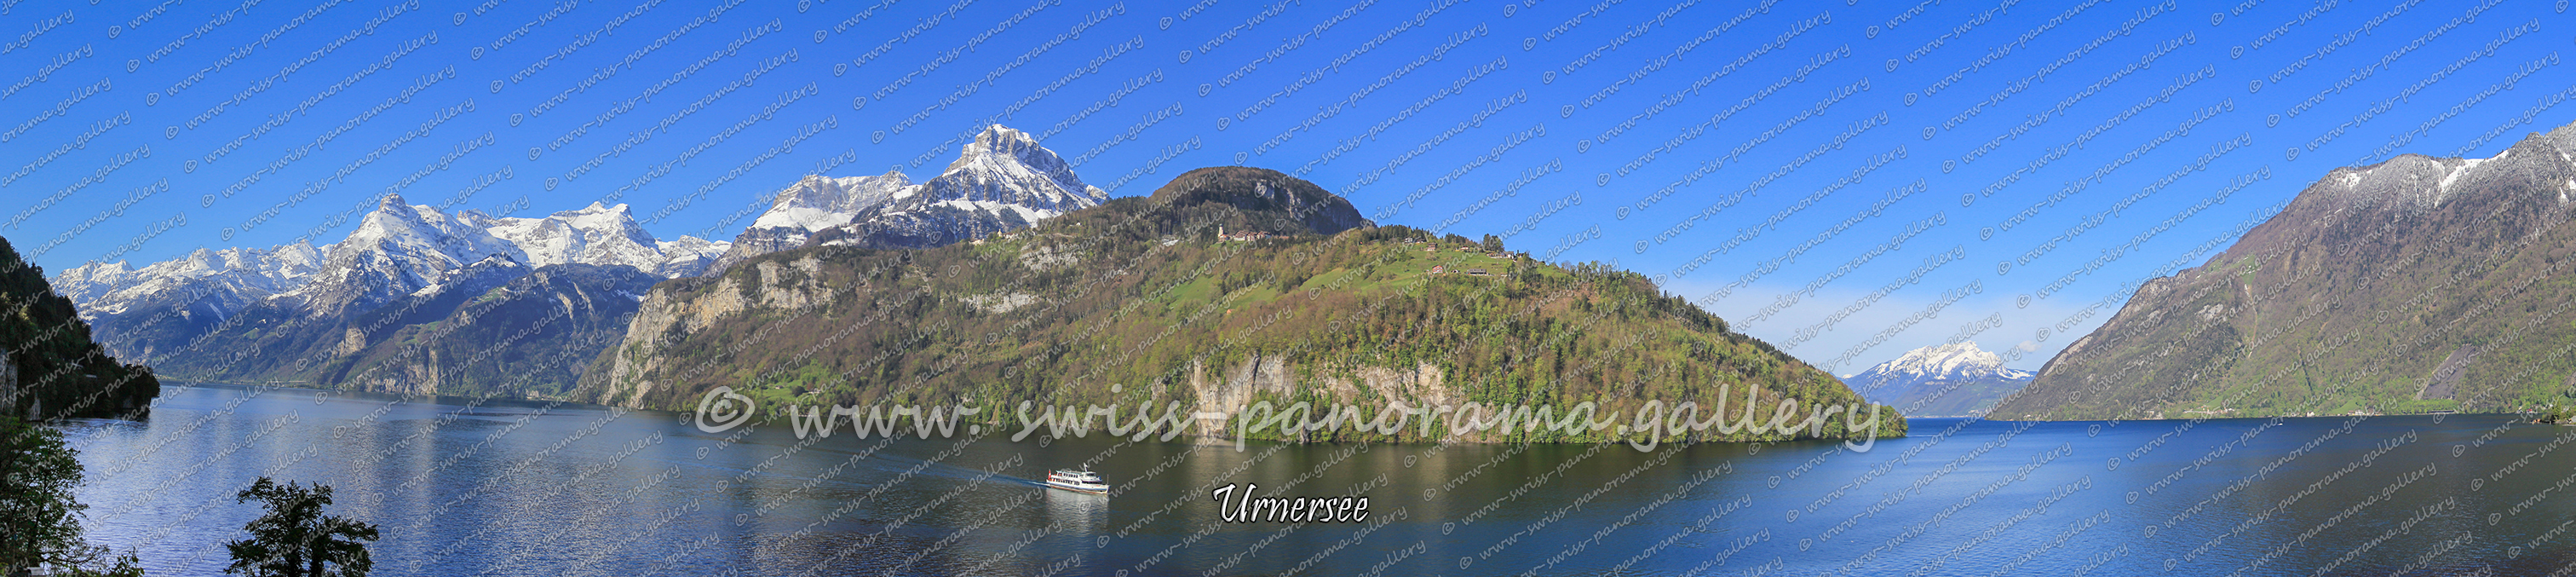 Switzerland Panorama Urnersee aus der Sicht vom Oberen Ende der Axenstrasse